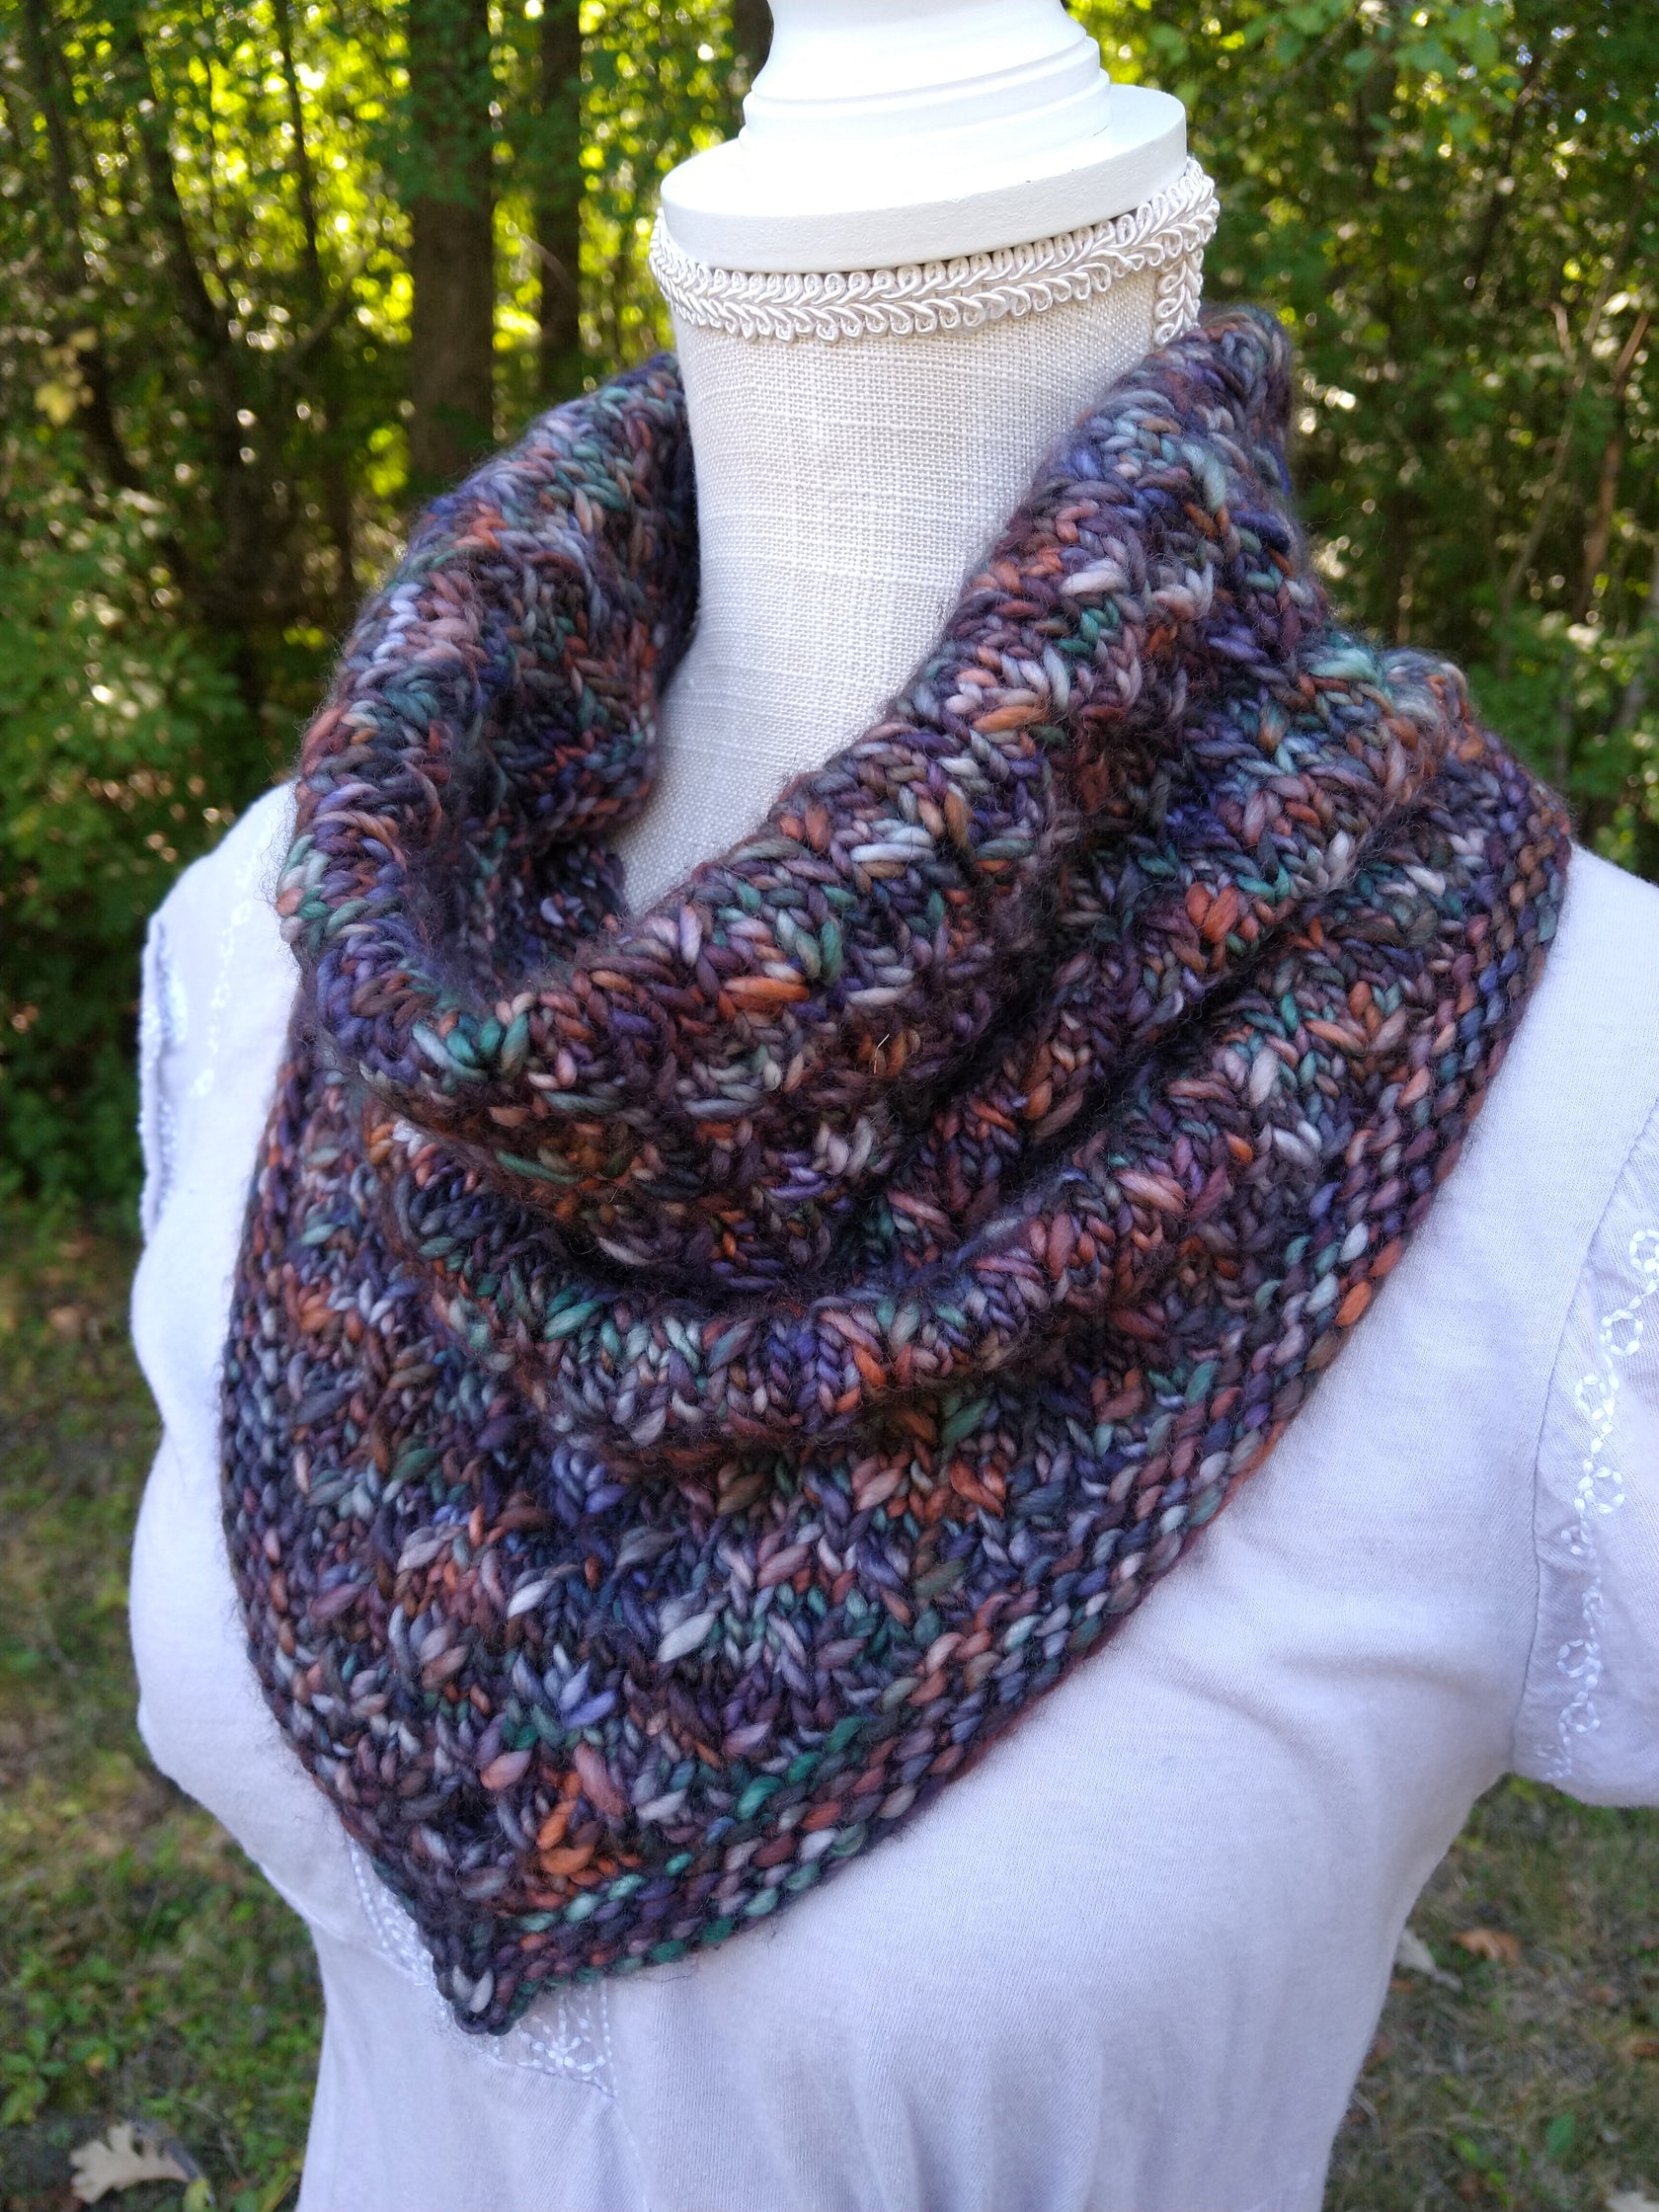 Rosewood Bandana Cowl Knitting Pattern – Wanded Knit and Crochet